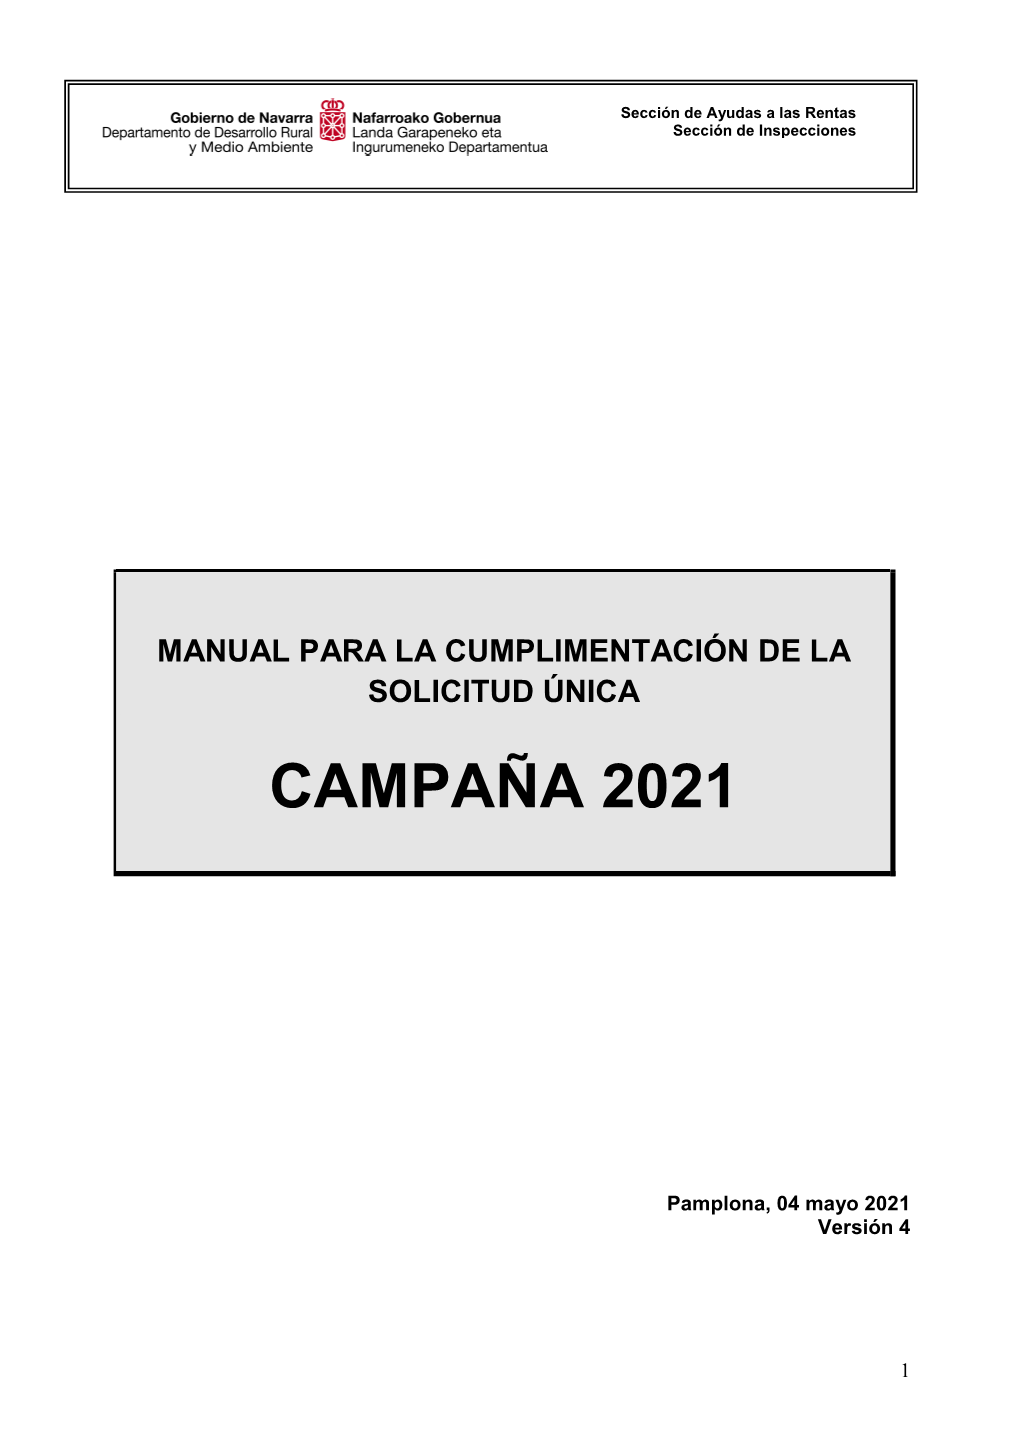 Campaña 2021